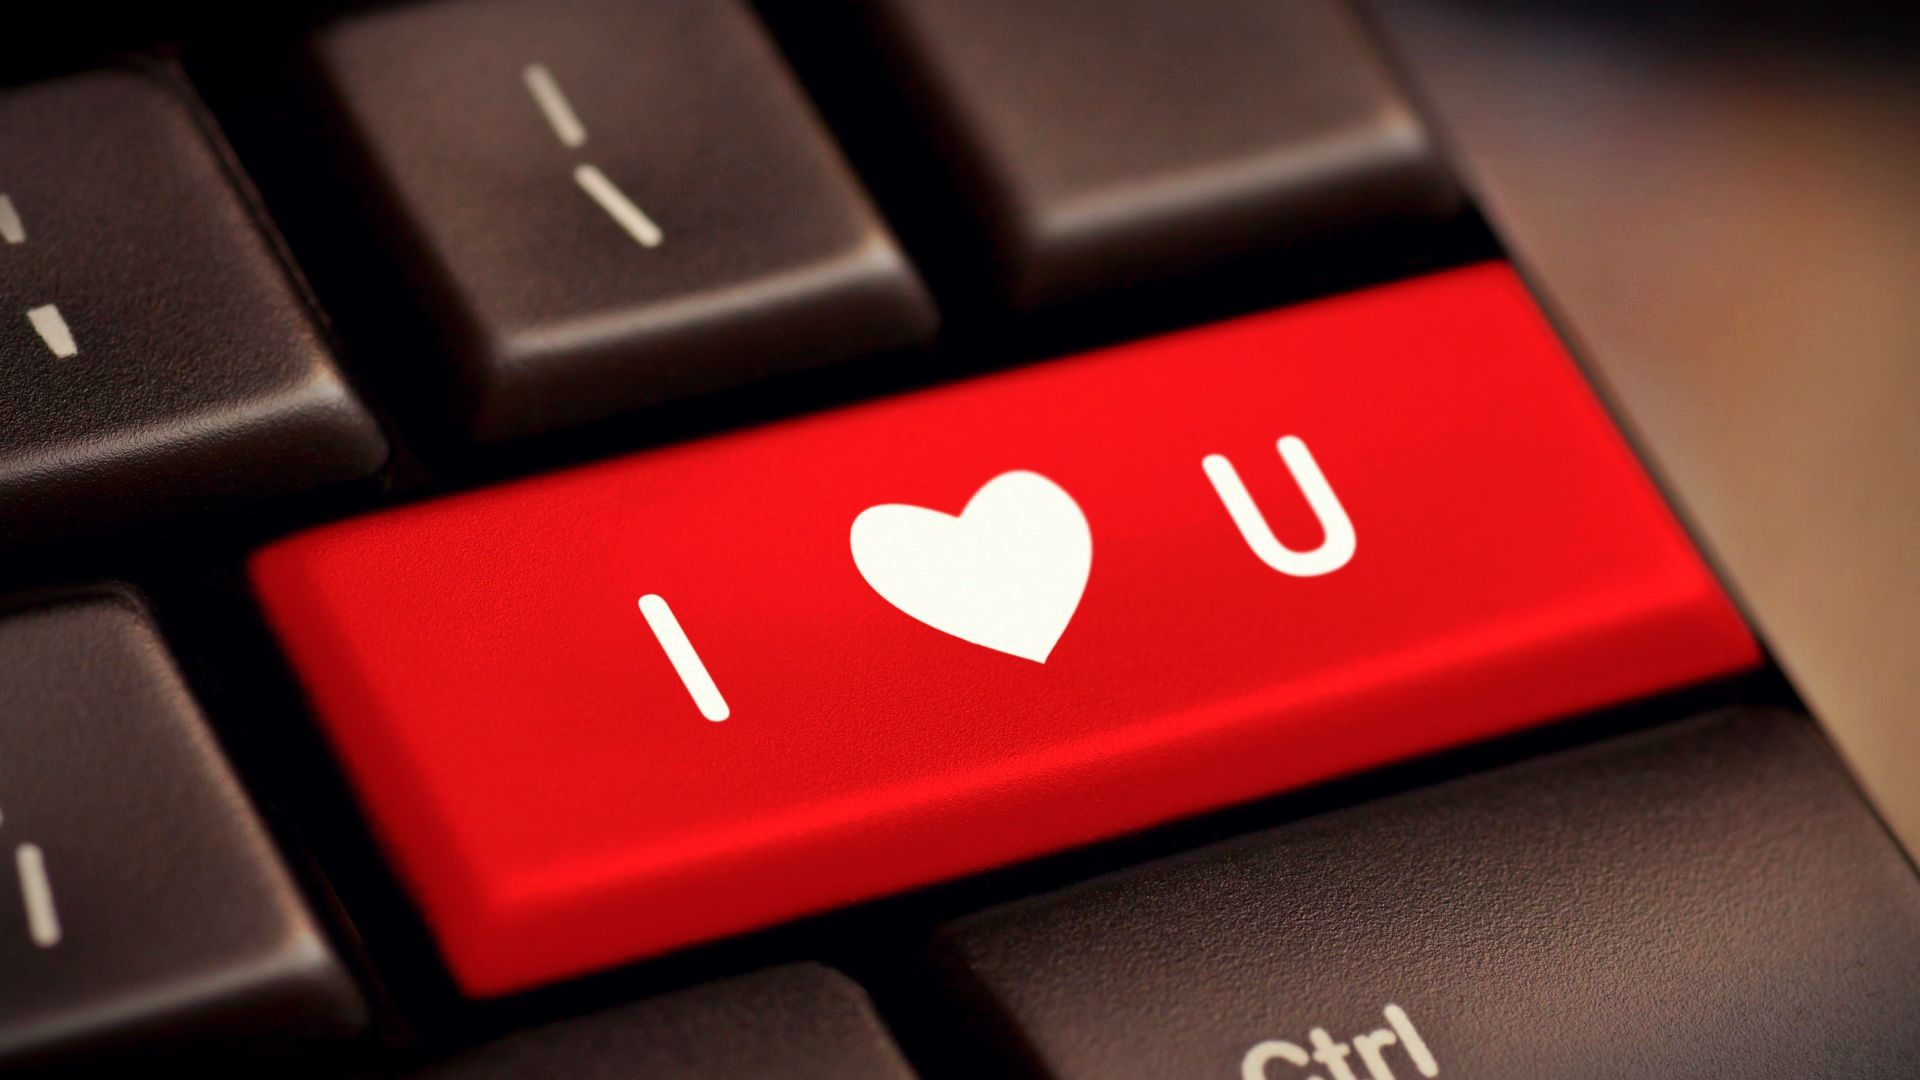 je t'aime fond d'écran hd,clavier d'ordinateur,rouge,texte,la technologie,dispositif d'entrée